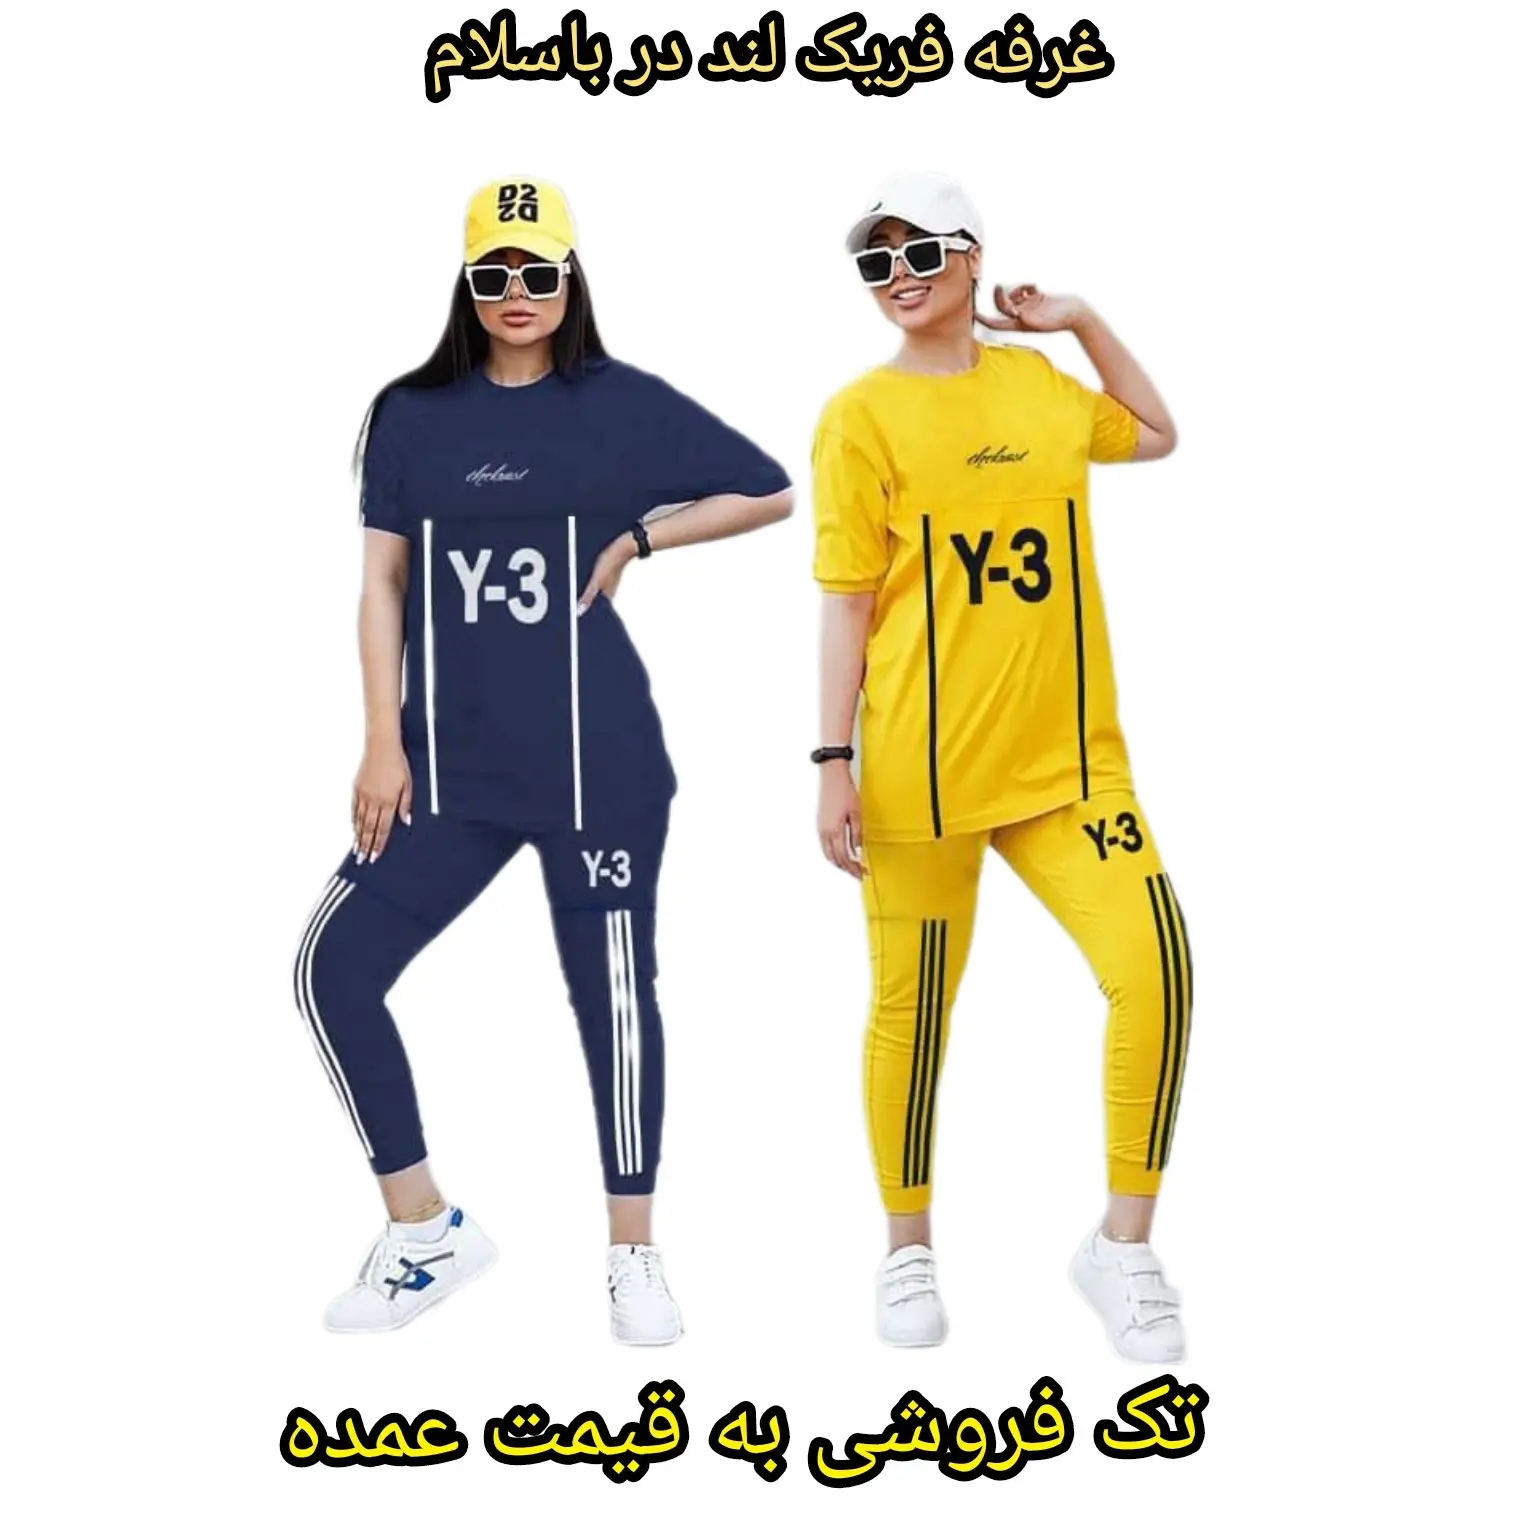 ست تیشرت و شلوار Y3 ورزشی و اسپرت مردانه و زنانه 12 رنگ قیمت 258.000 تومن